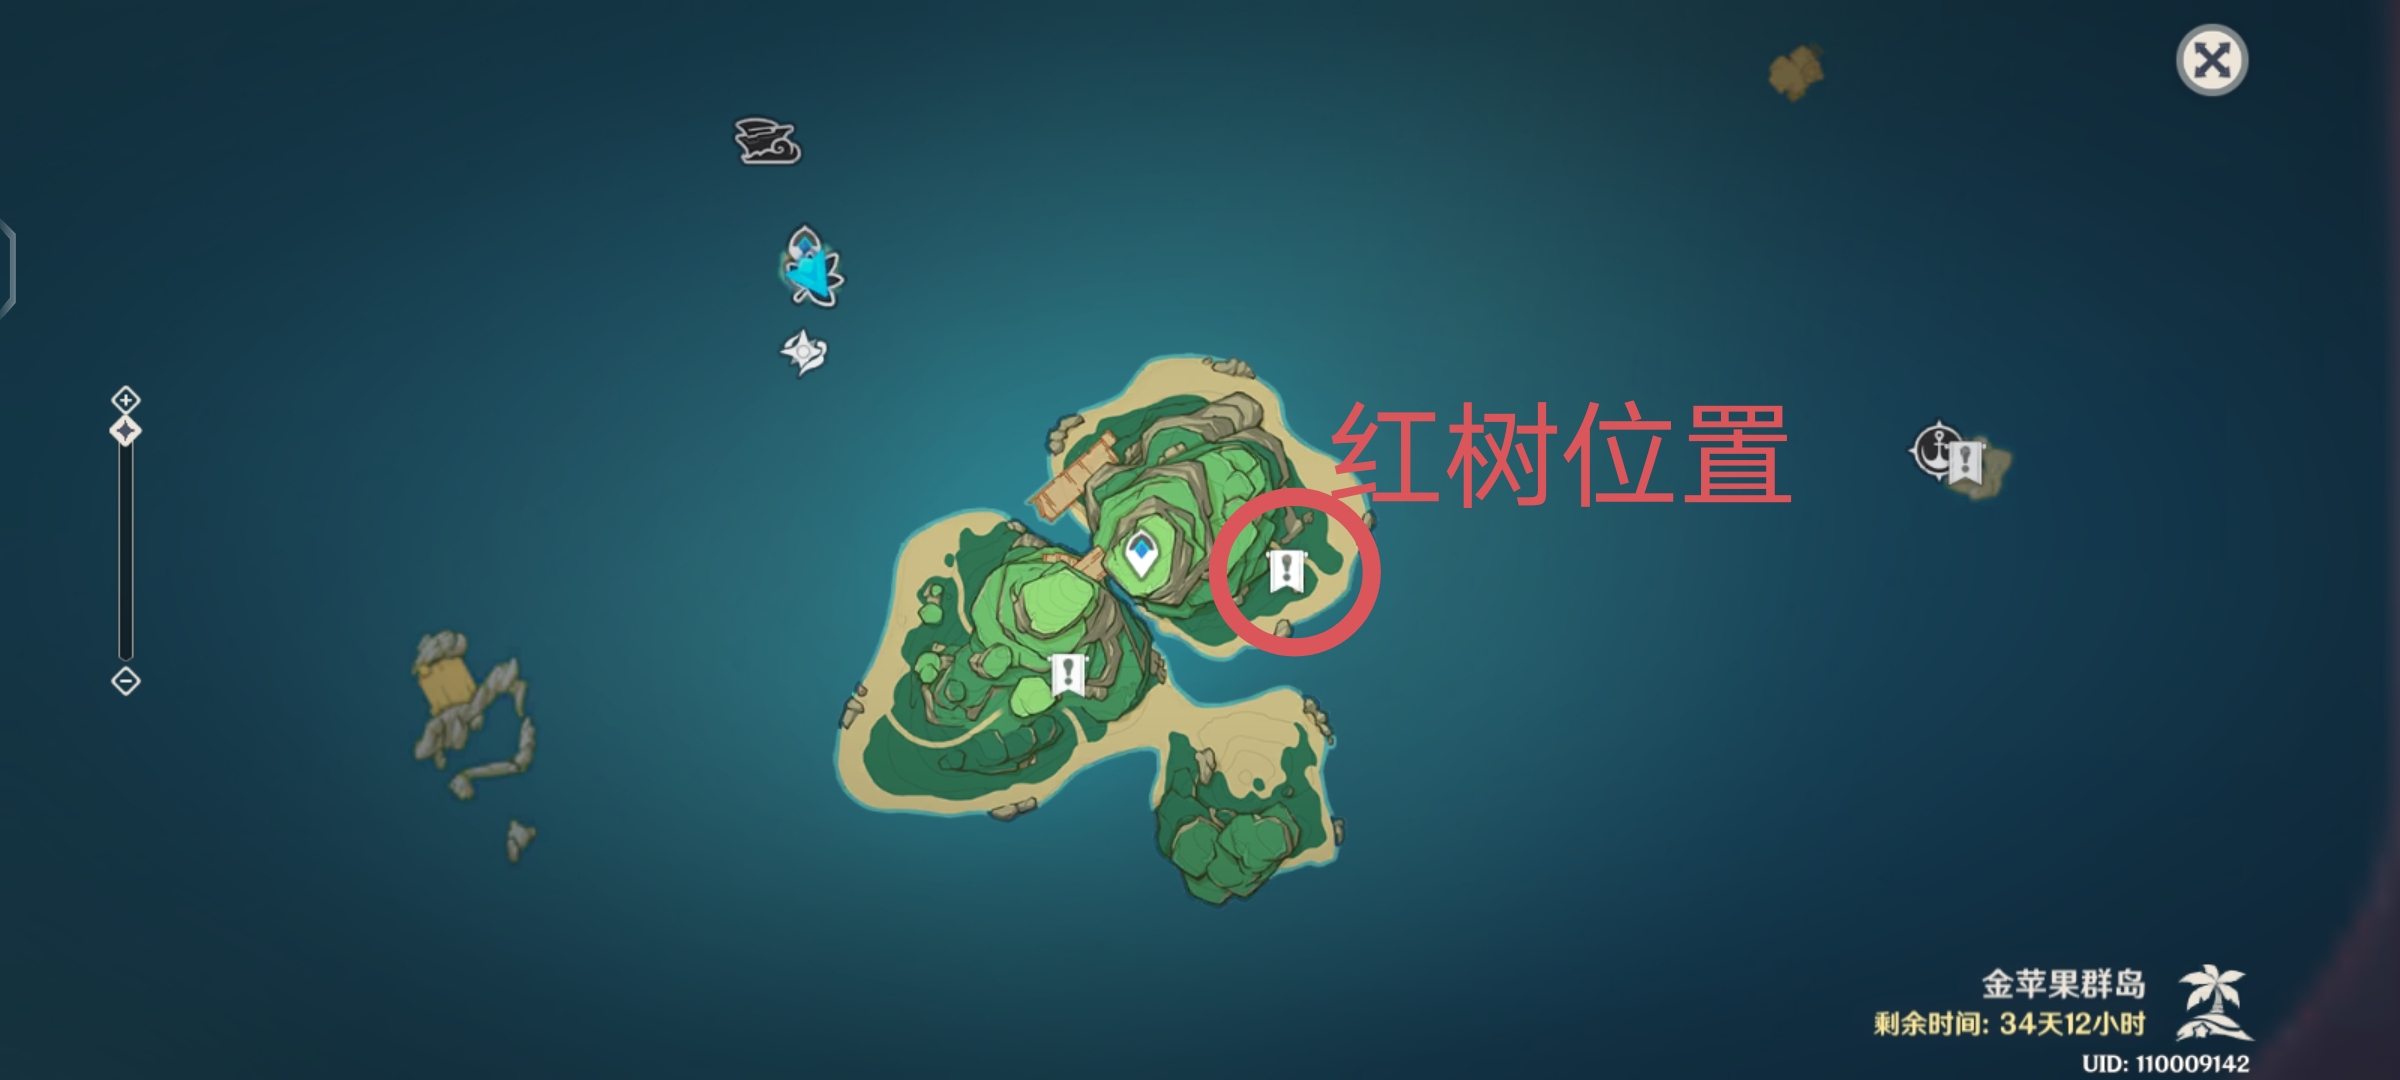 【V2.8攻略】#探索解谜#2.8版本金苹果群岛的新增世界任务——「四礁觅宝记」的流程梳理|原神 - 第67张